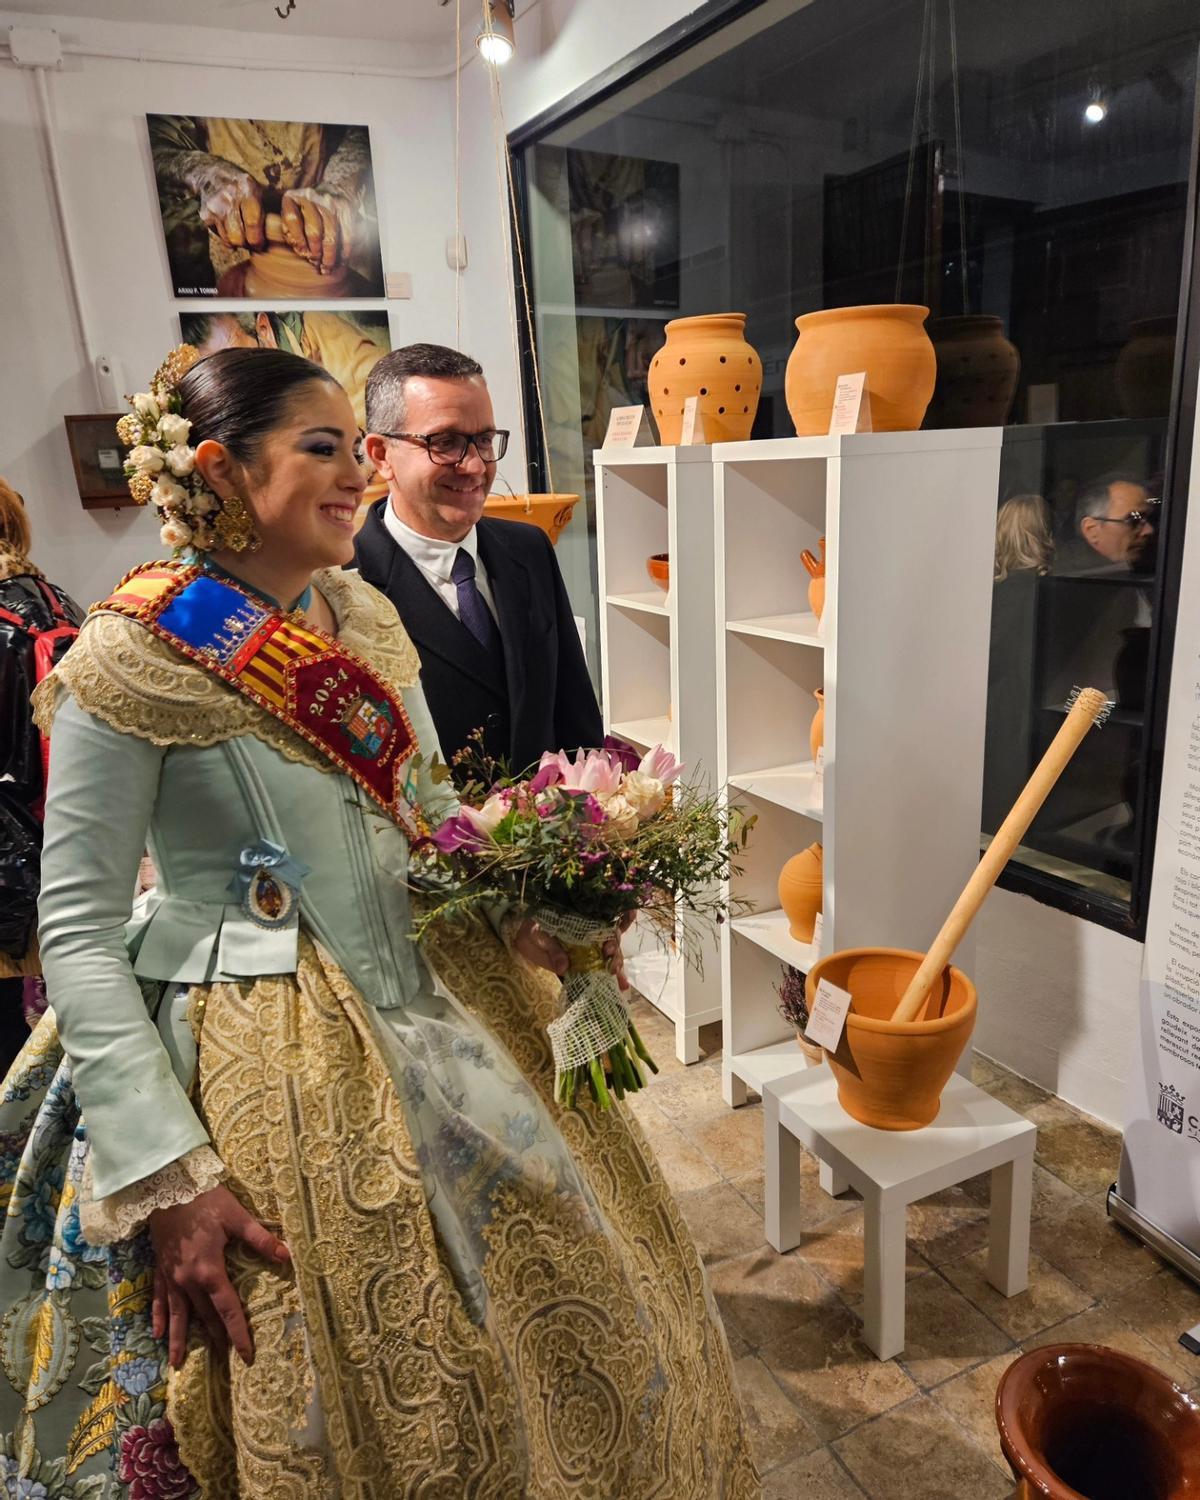 Adriana y el alcalde, Nacho Mira, en la inauguración de la exposición de alfarería.